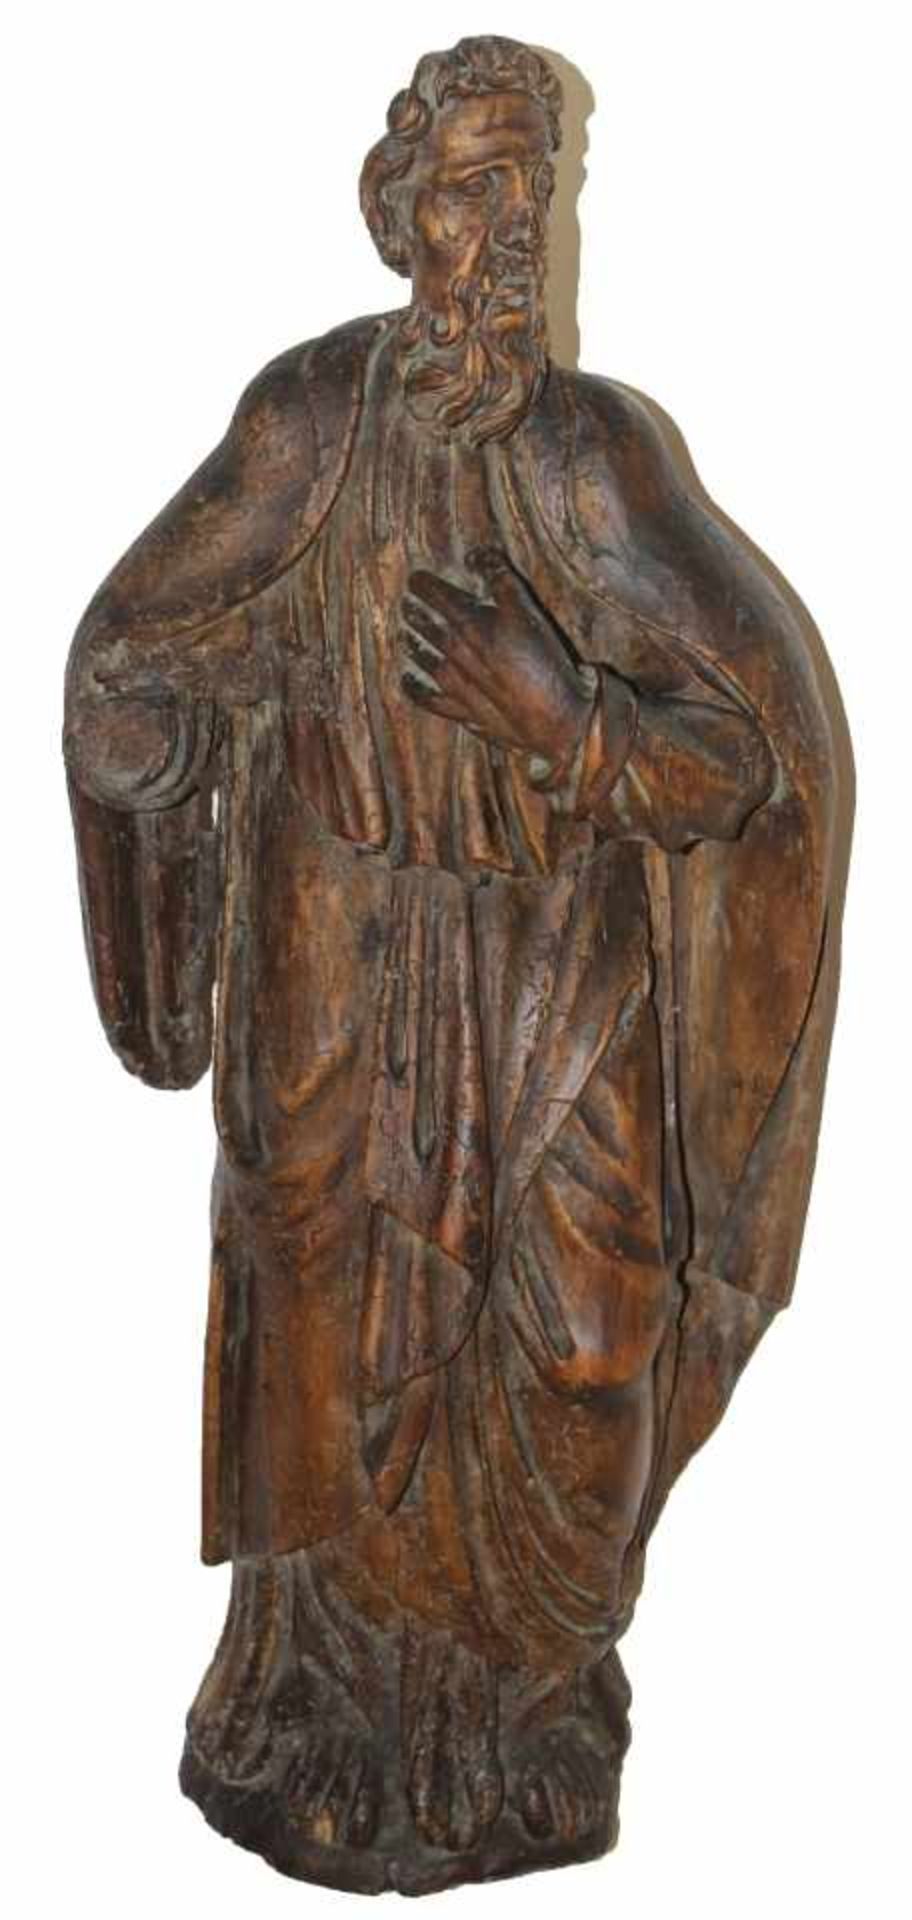 Skulptur - wohl deutsch 18. Jahrhundert "Ordensheiliger", Holz geschnitzt, Altersspuren mit